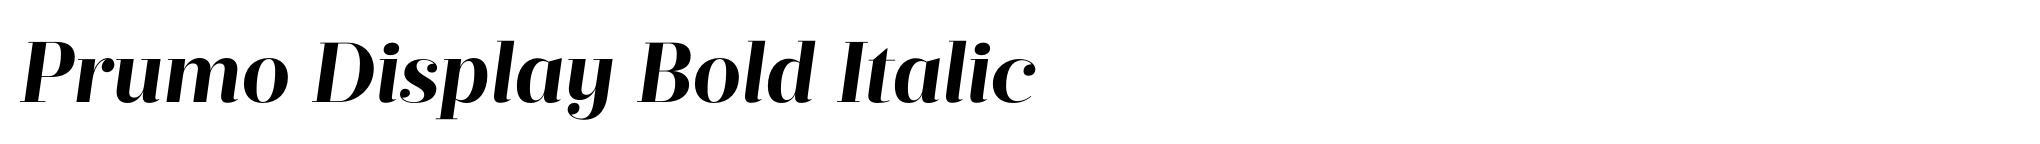 Prumo Display Bold Italic image